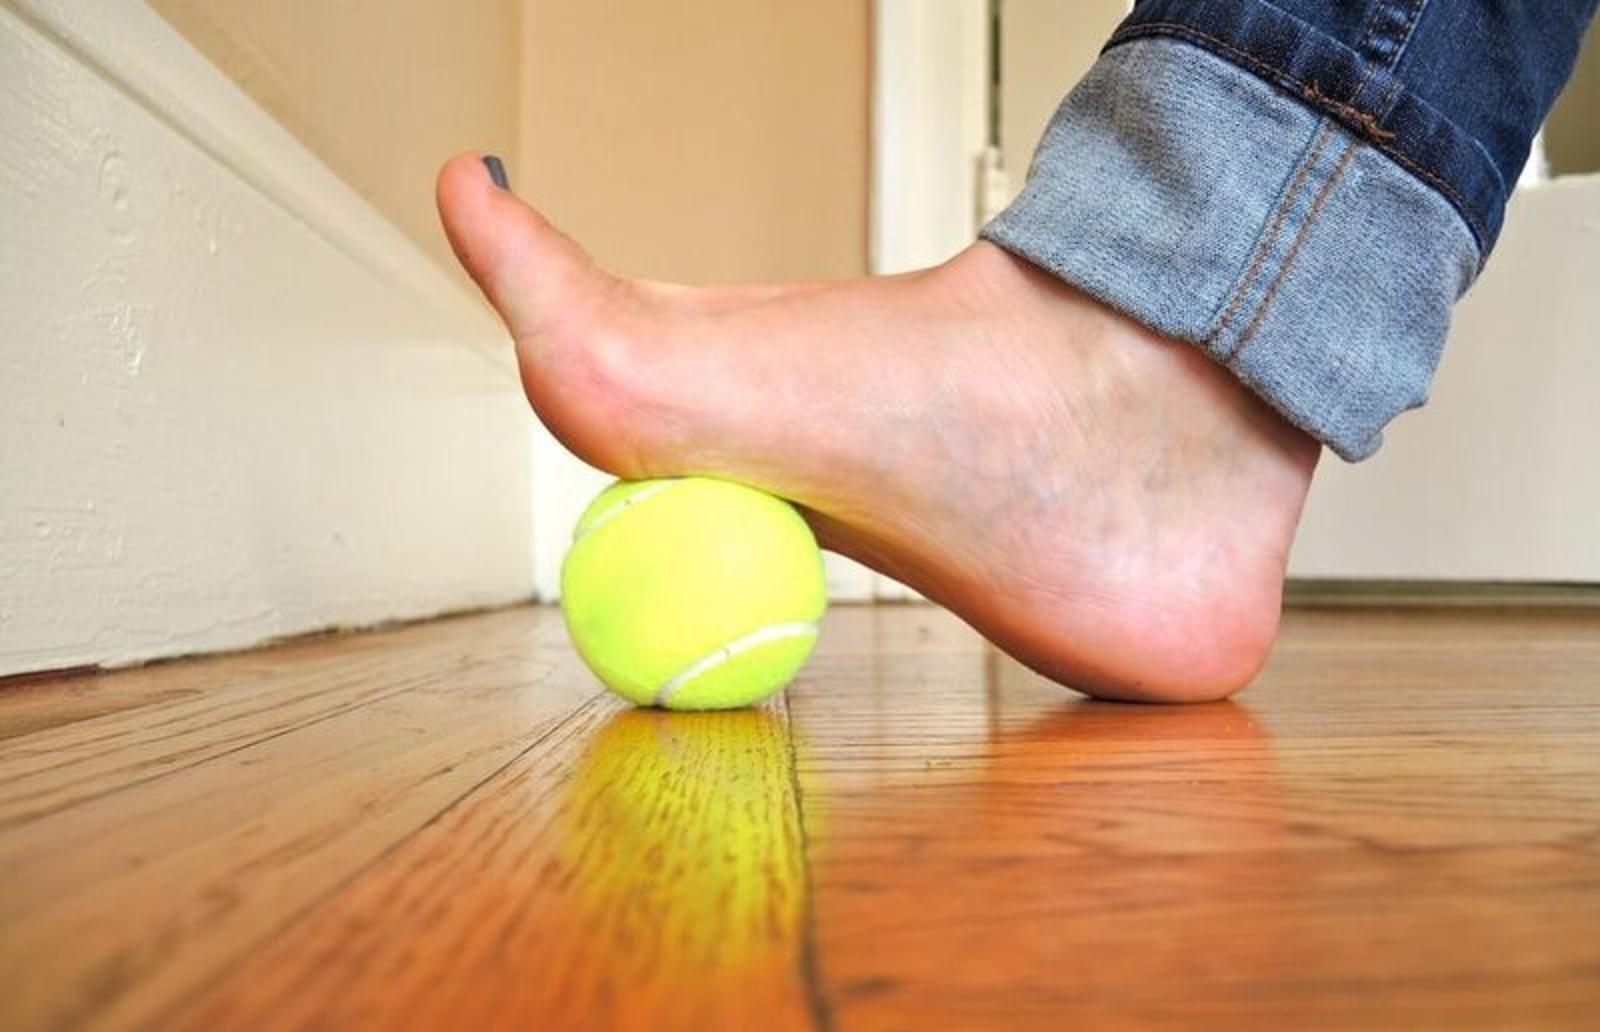 Sore feet. Подошвенный (плантарный) фасциит. Стопа и теннисный мяч. Упражнения для стопы с мячиком теннисным. Упражнения от плоскостопия с теннисным мячиком.